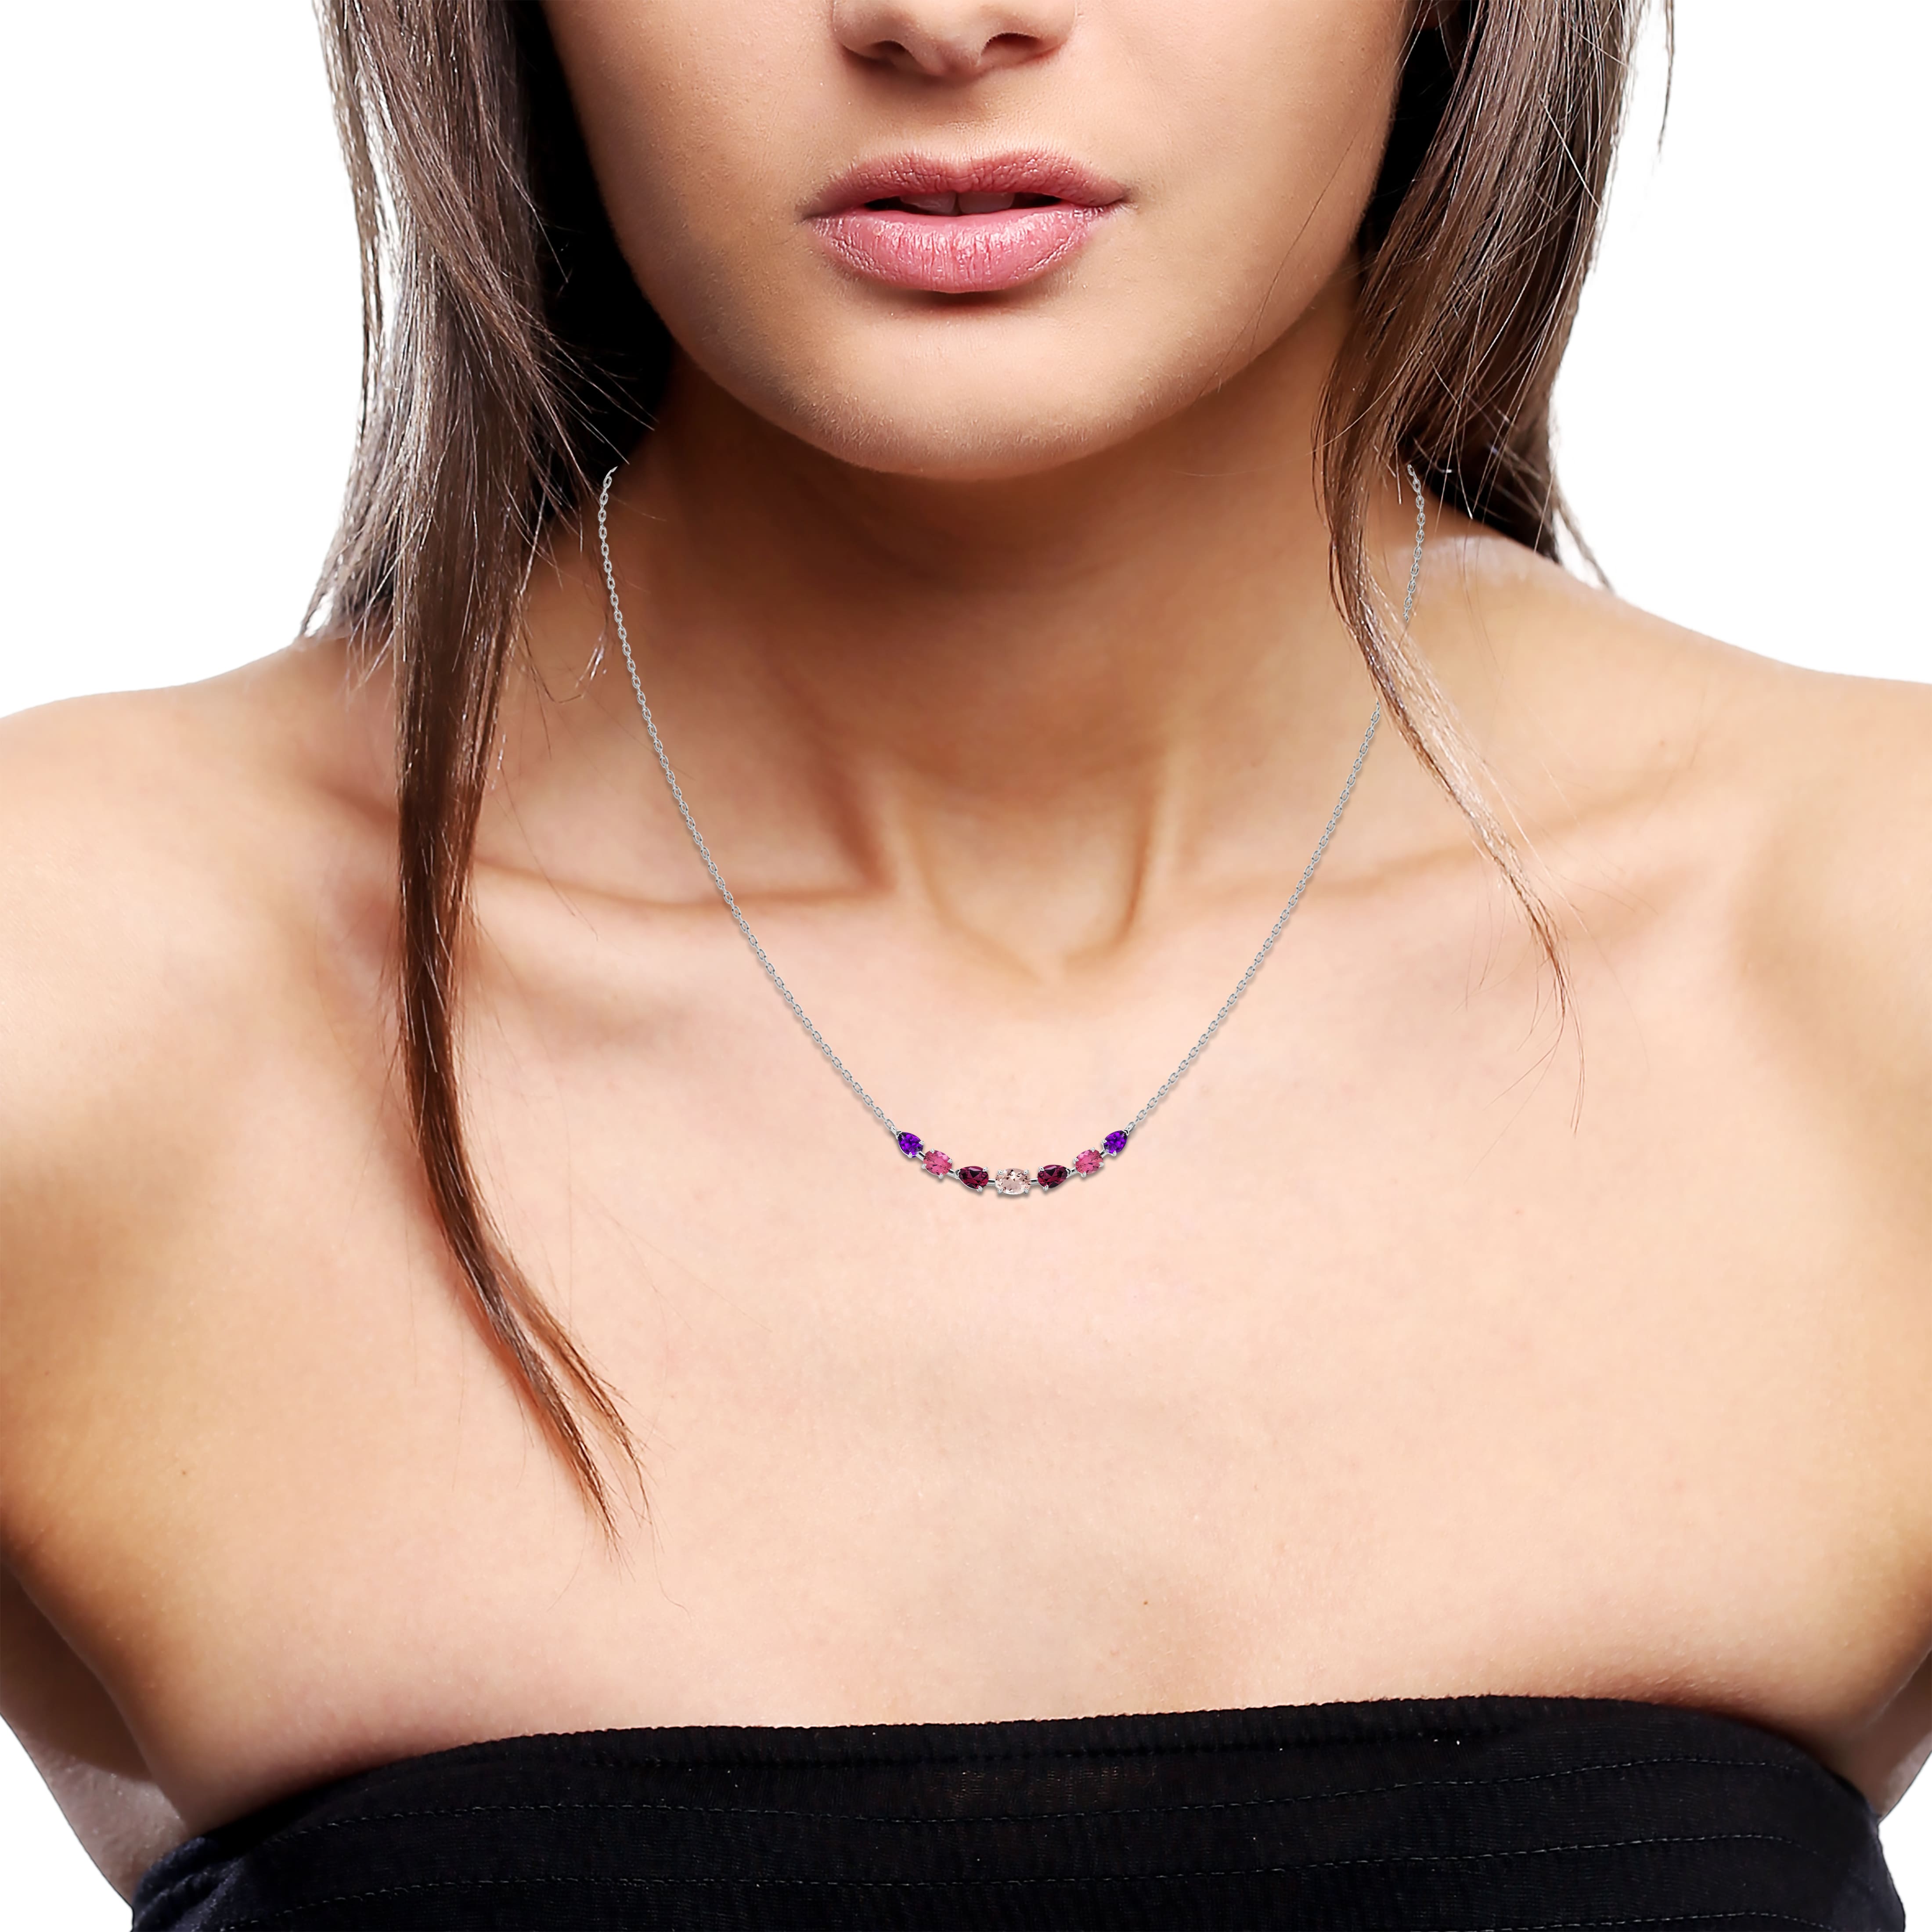 Gemstone cluster necklace on model neck